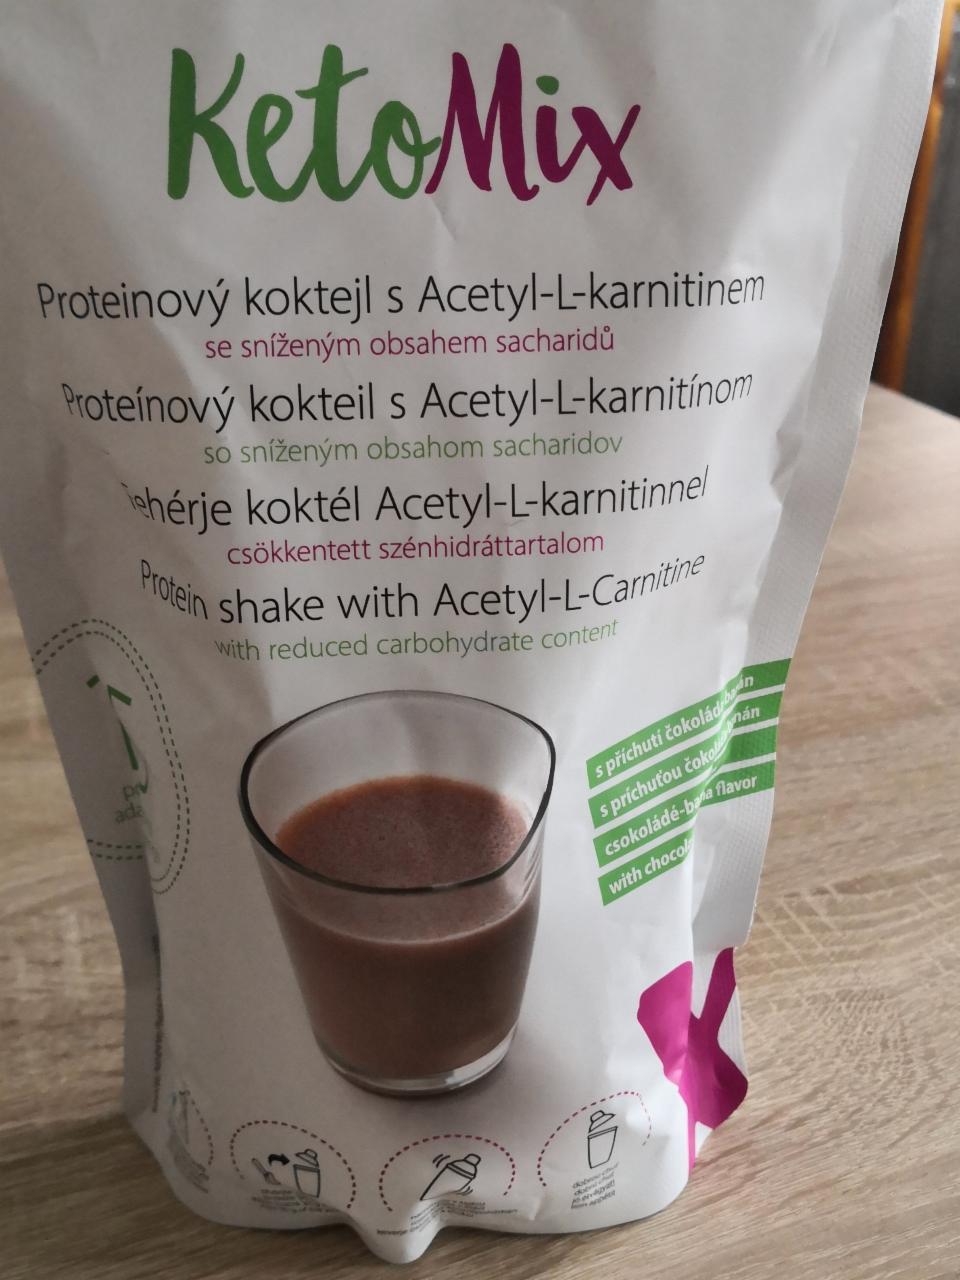 Fotografie - Proteinový koktejl s acetyl-l-karnitinem čokoláda - banán KetoMix